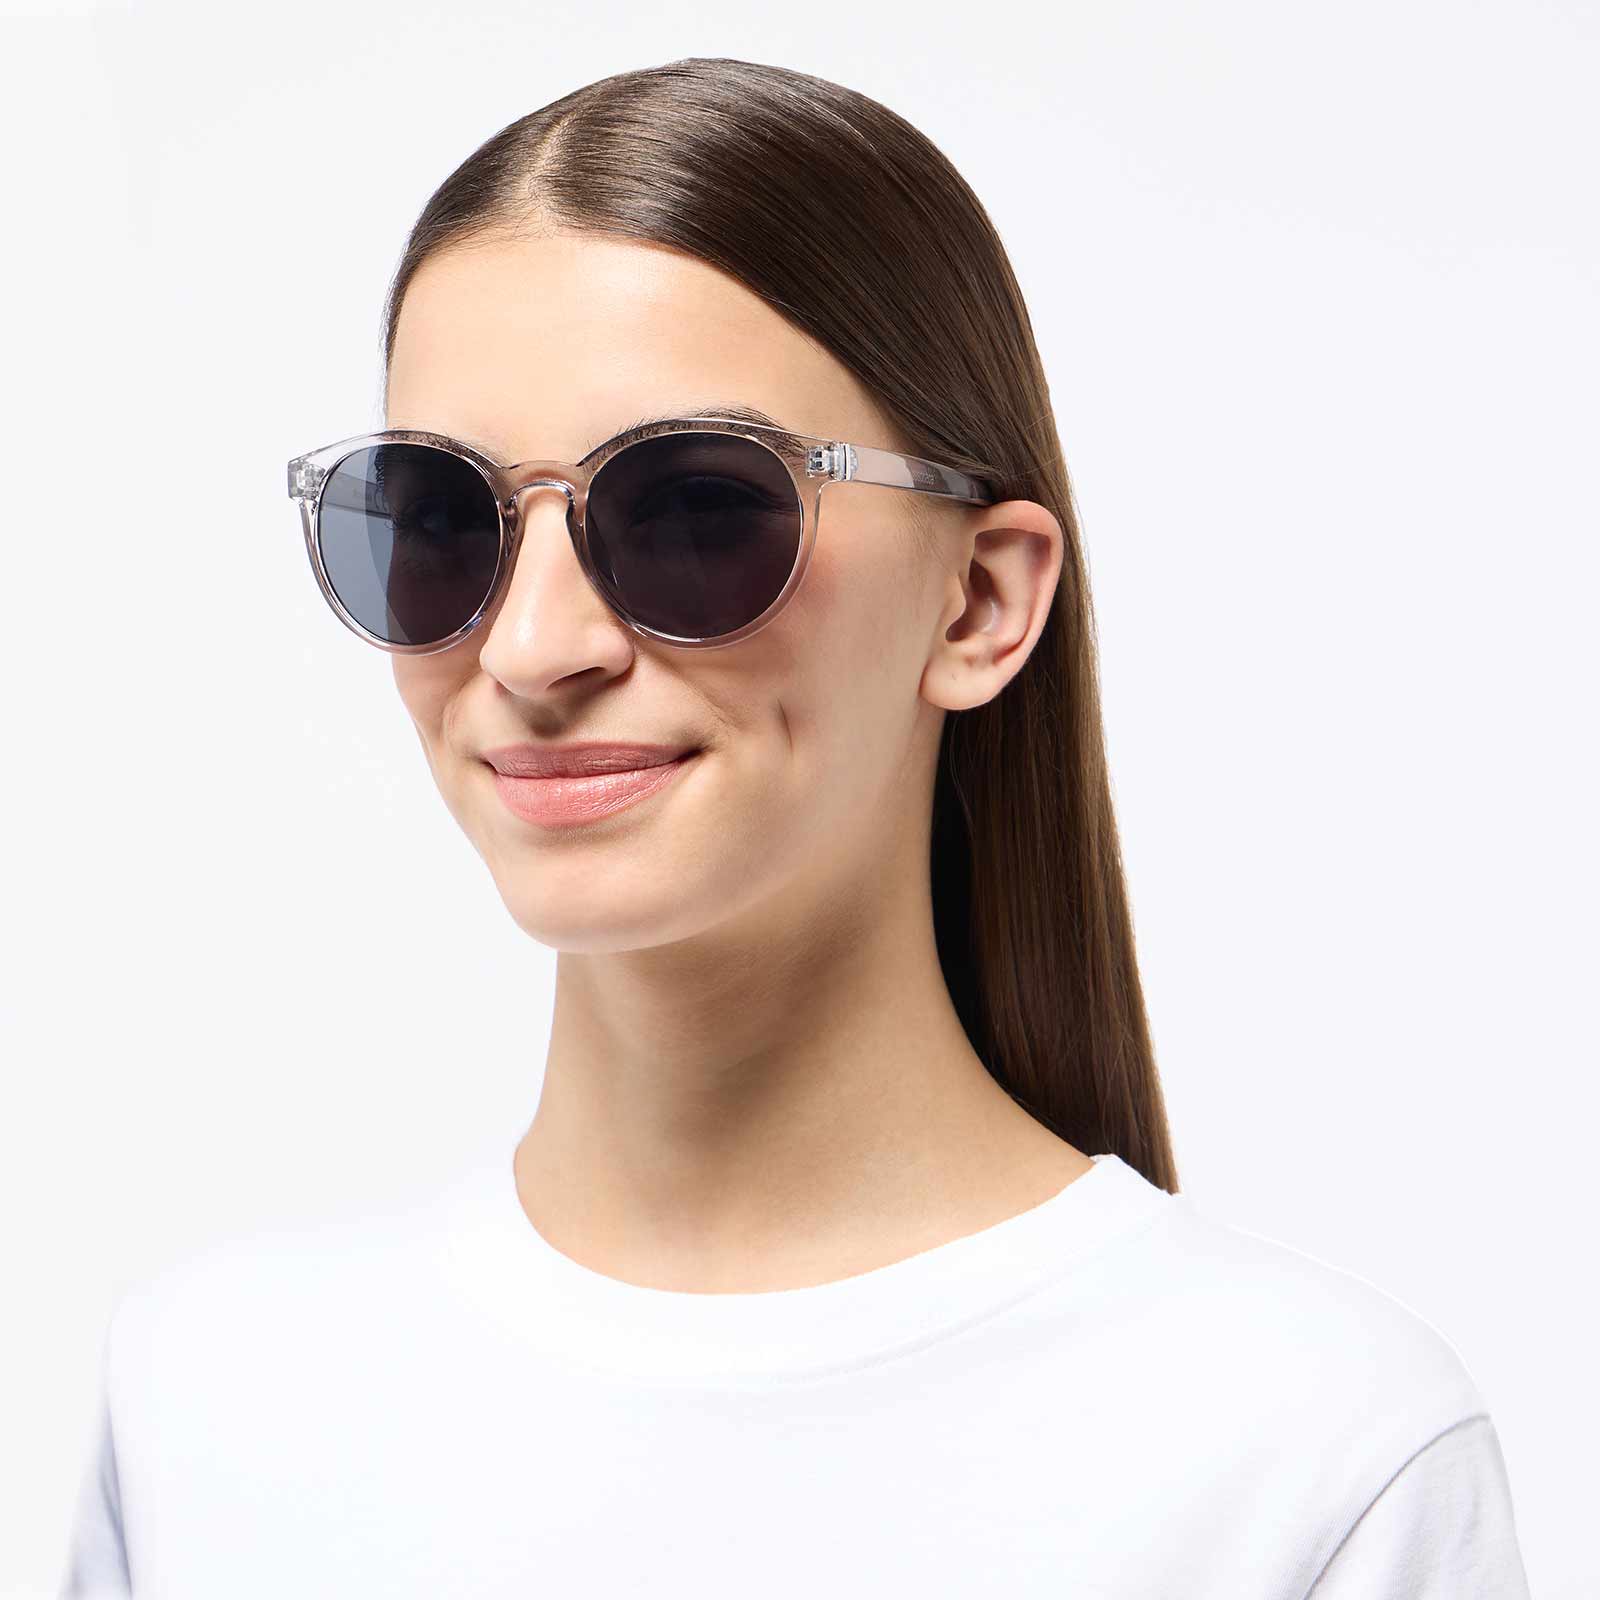 Solglasögon - transparent/grå